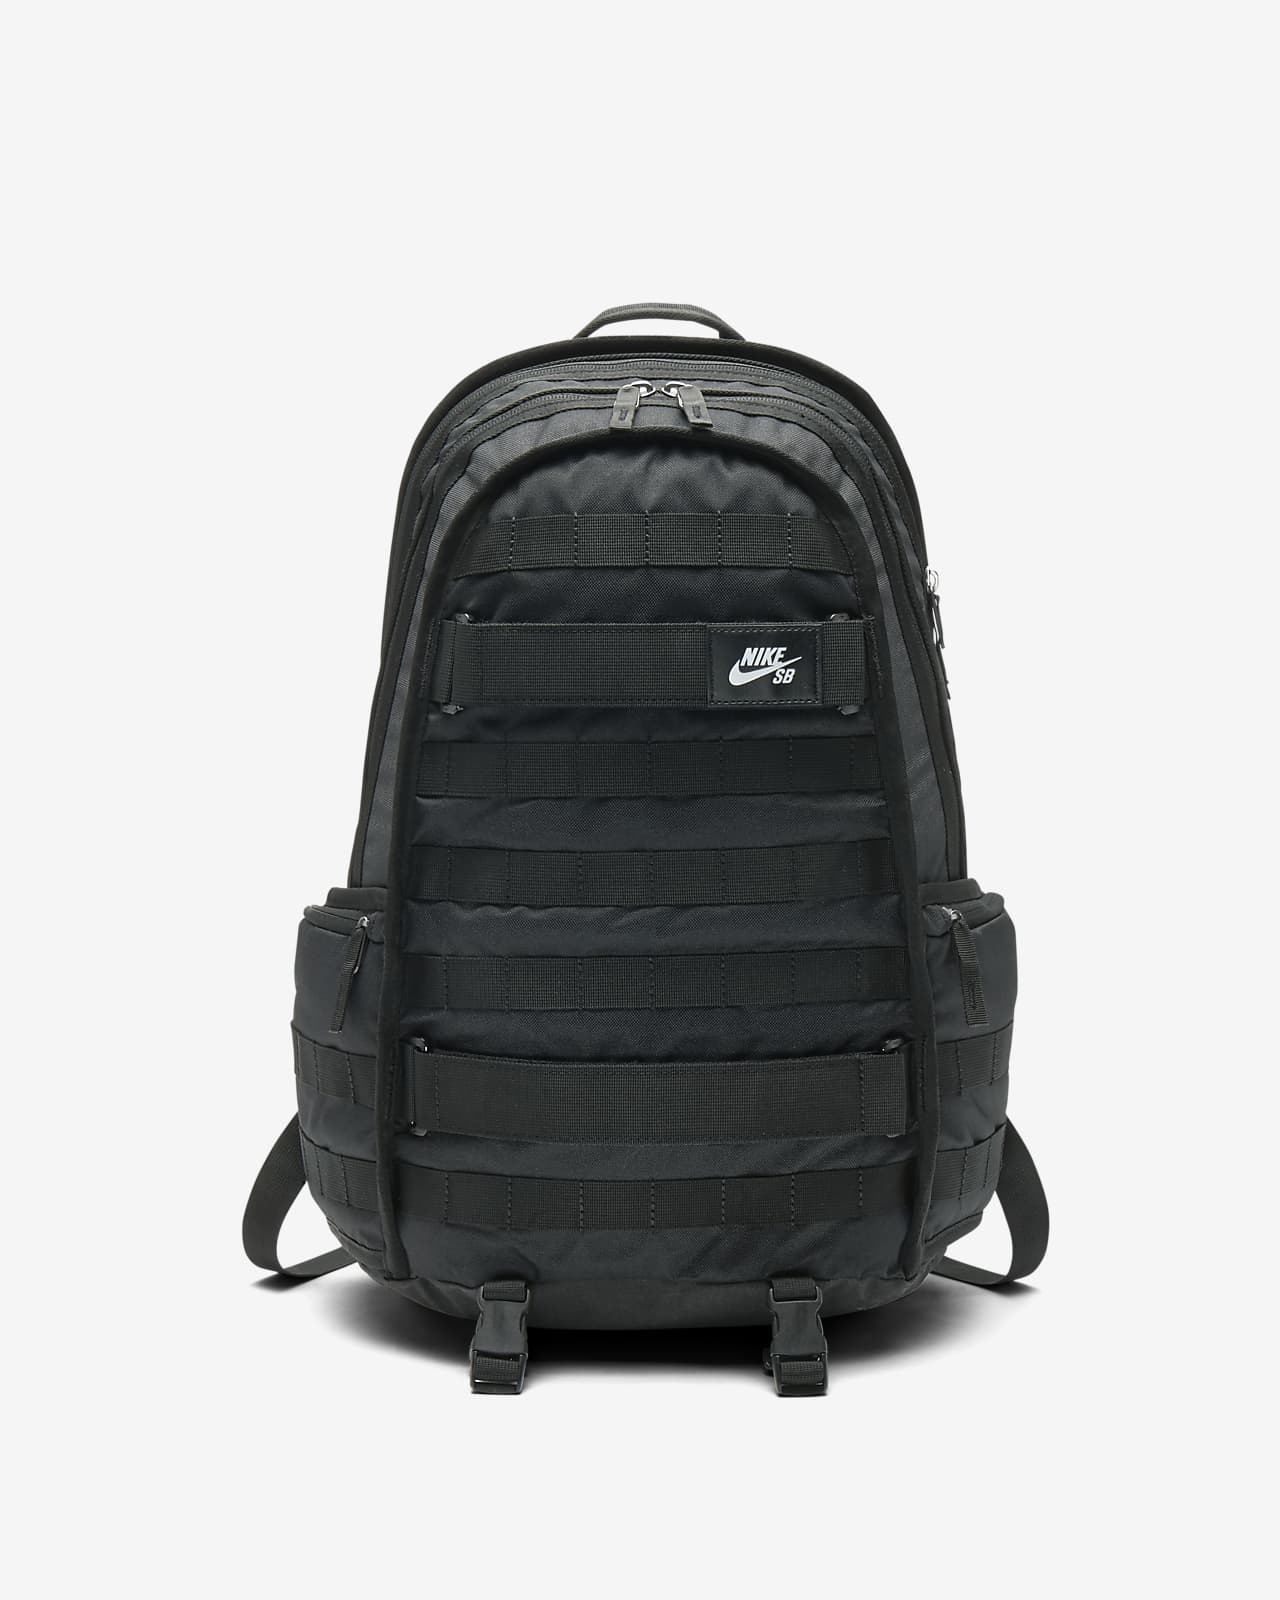 backpack nike sb rpm